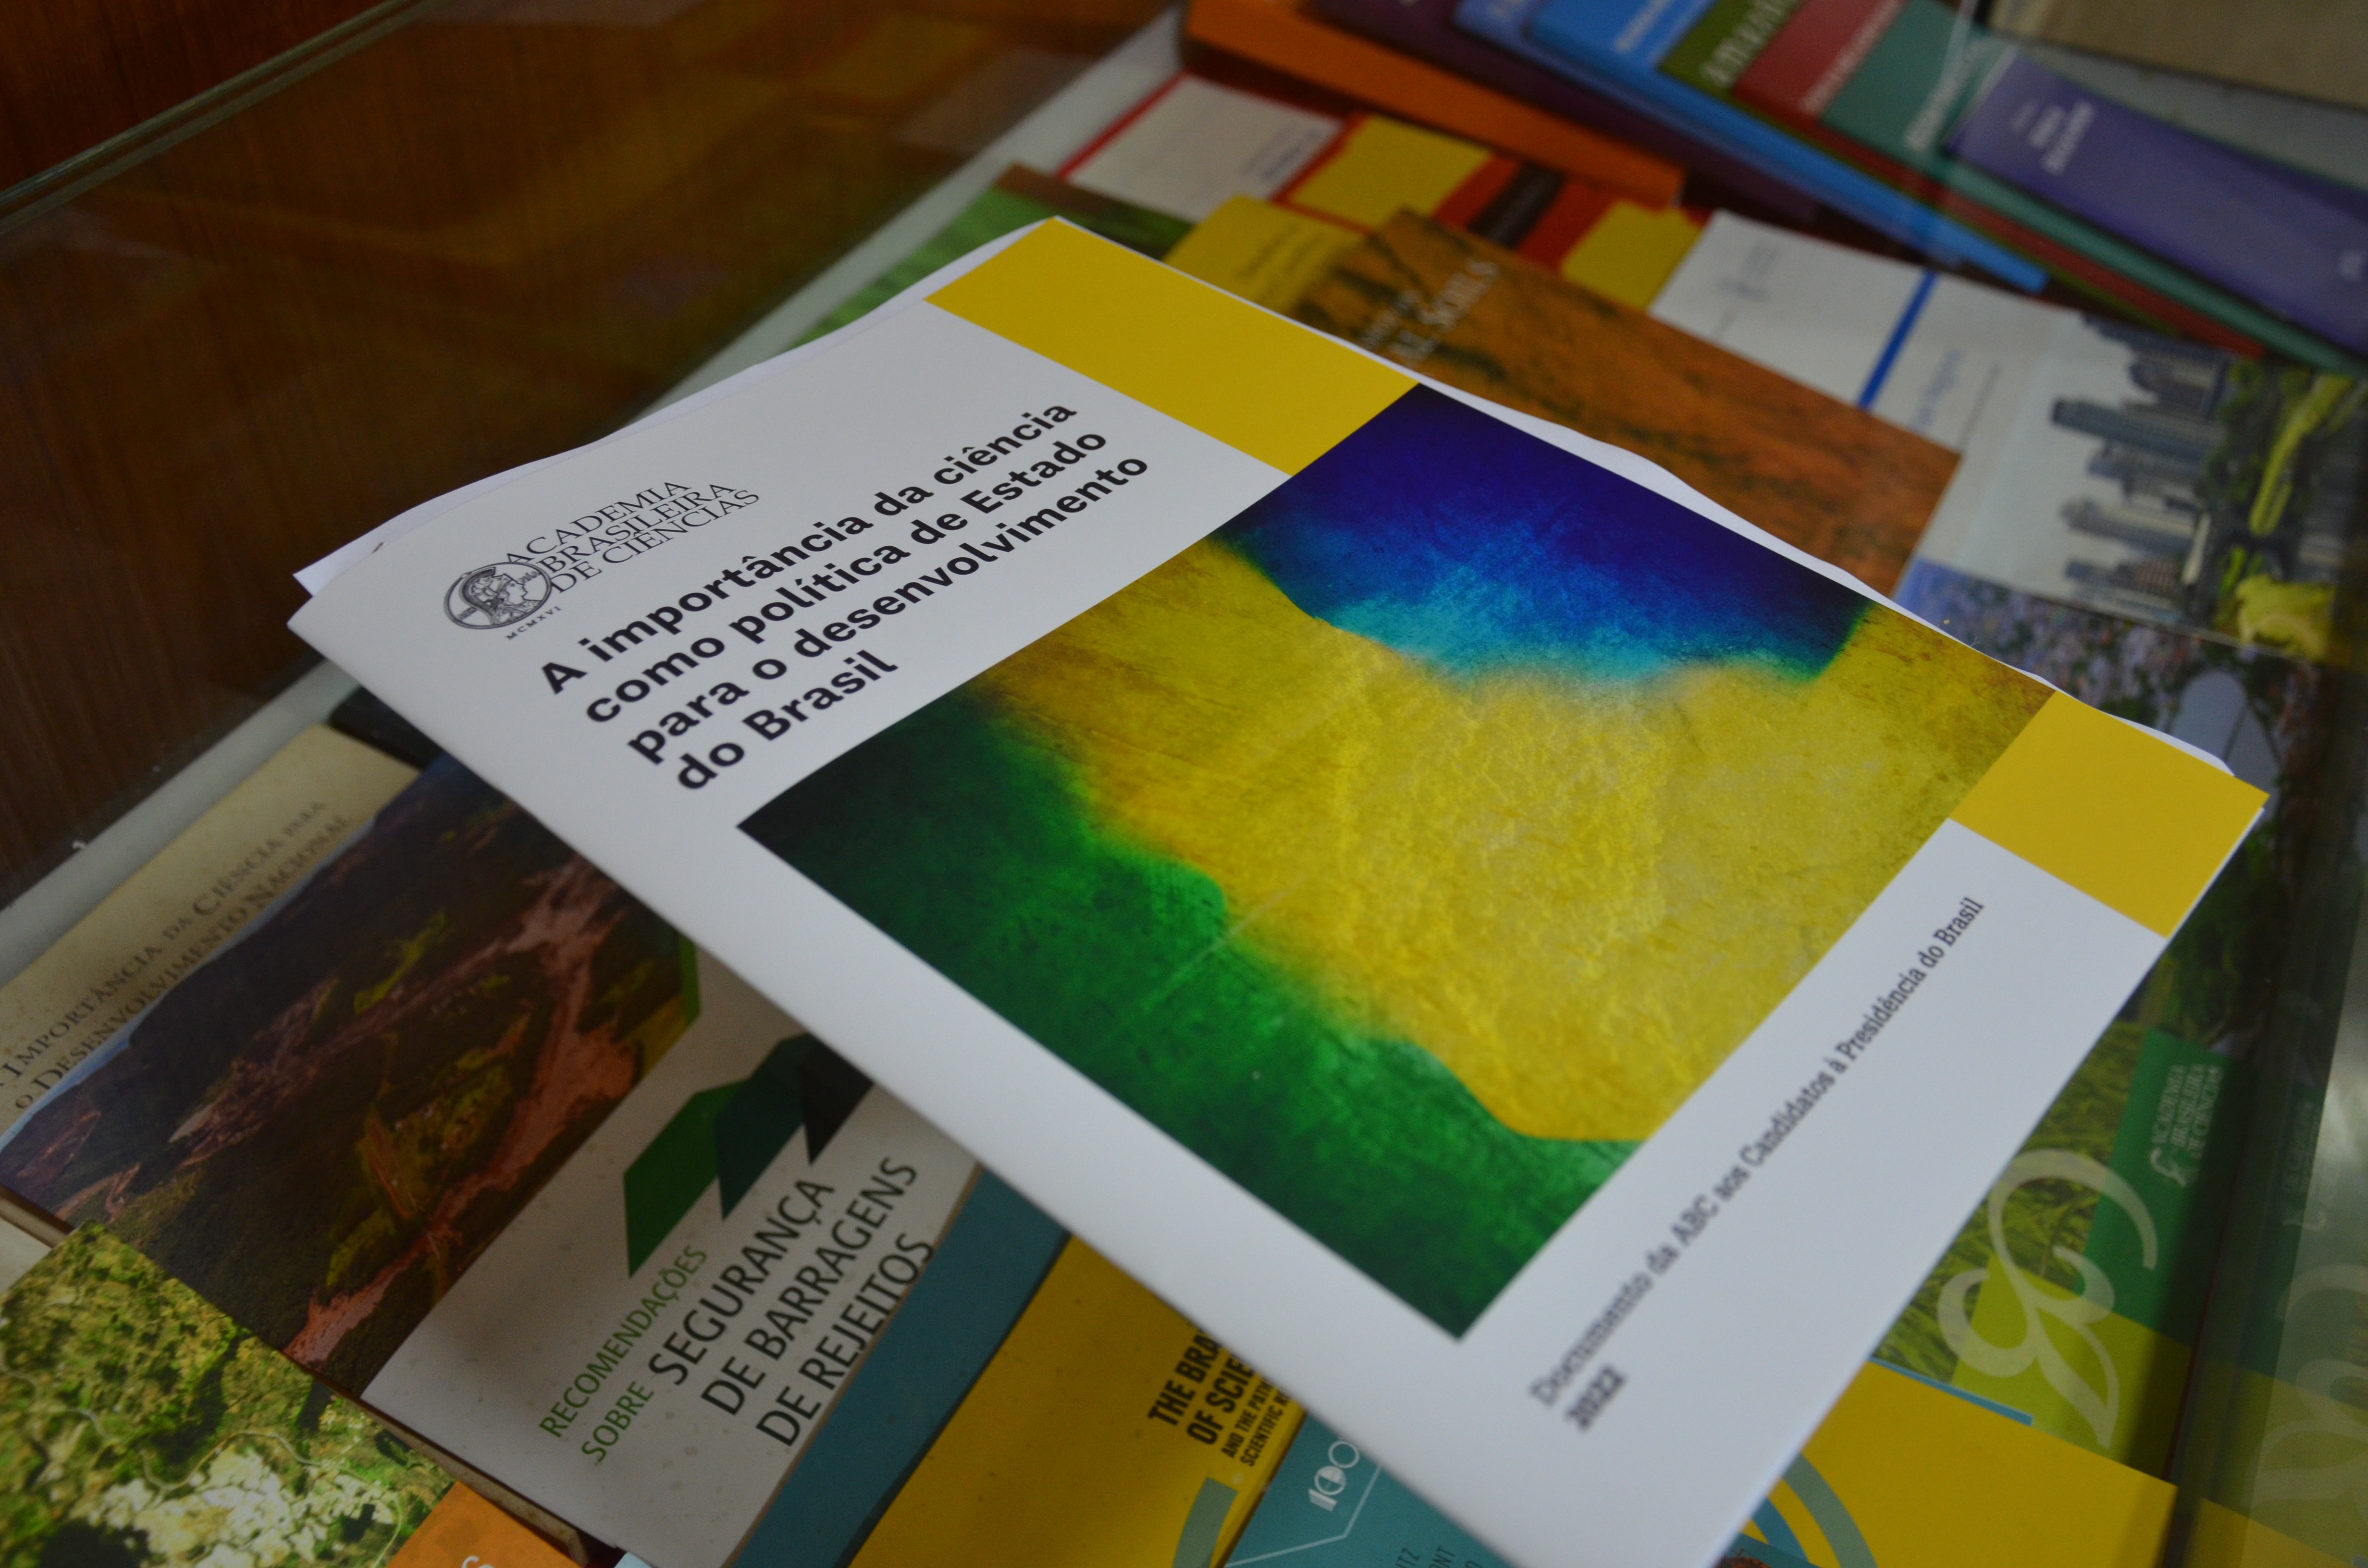 Documento apresenta recomendações para o desenvolvimento científico do país (Foto: Reprodução/Academia Brasileira de Ciências)